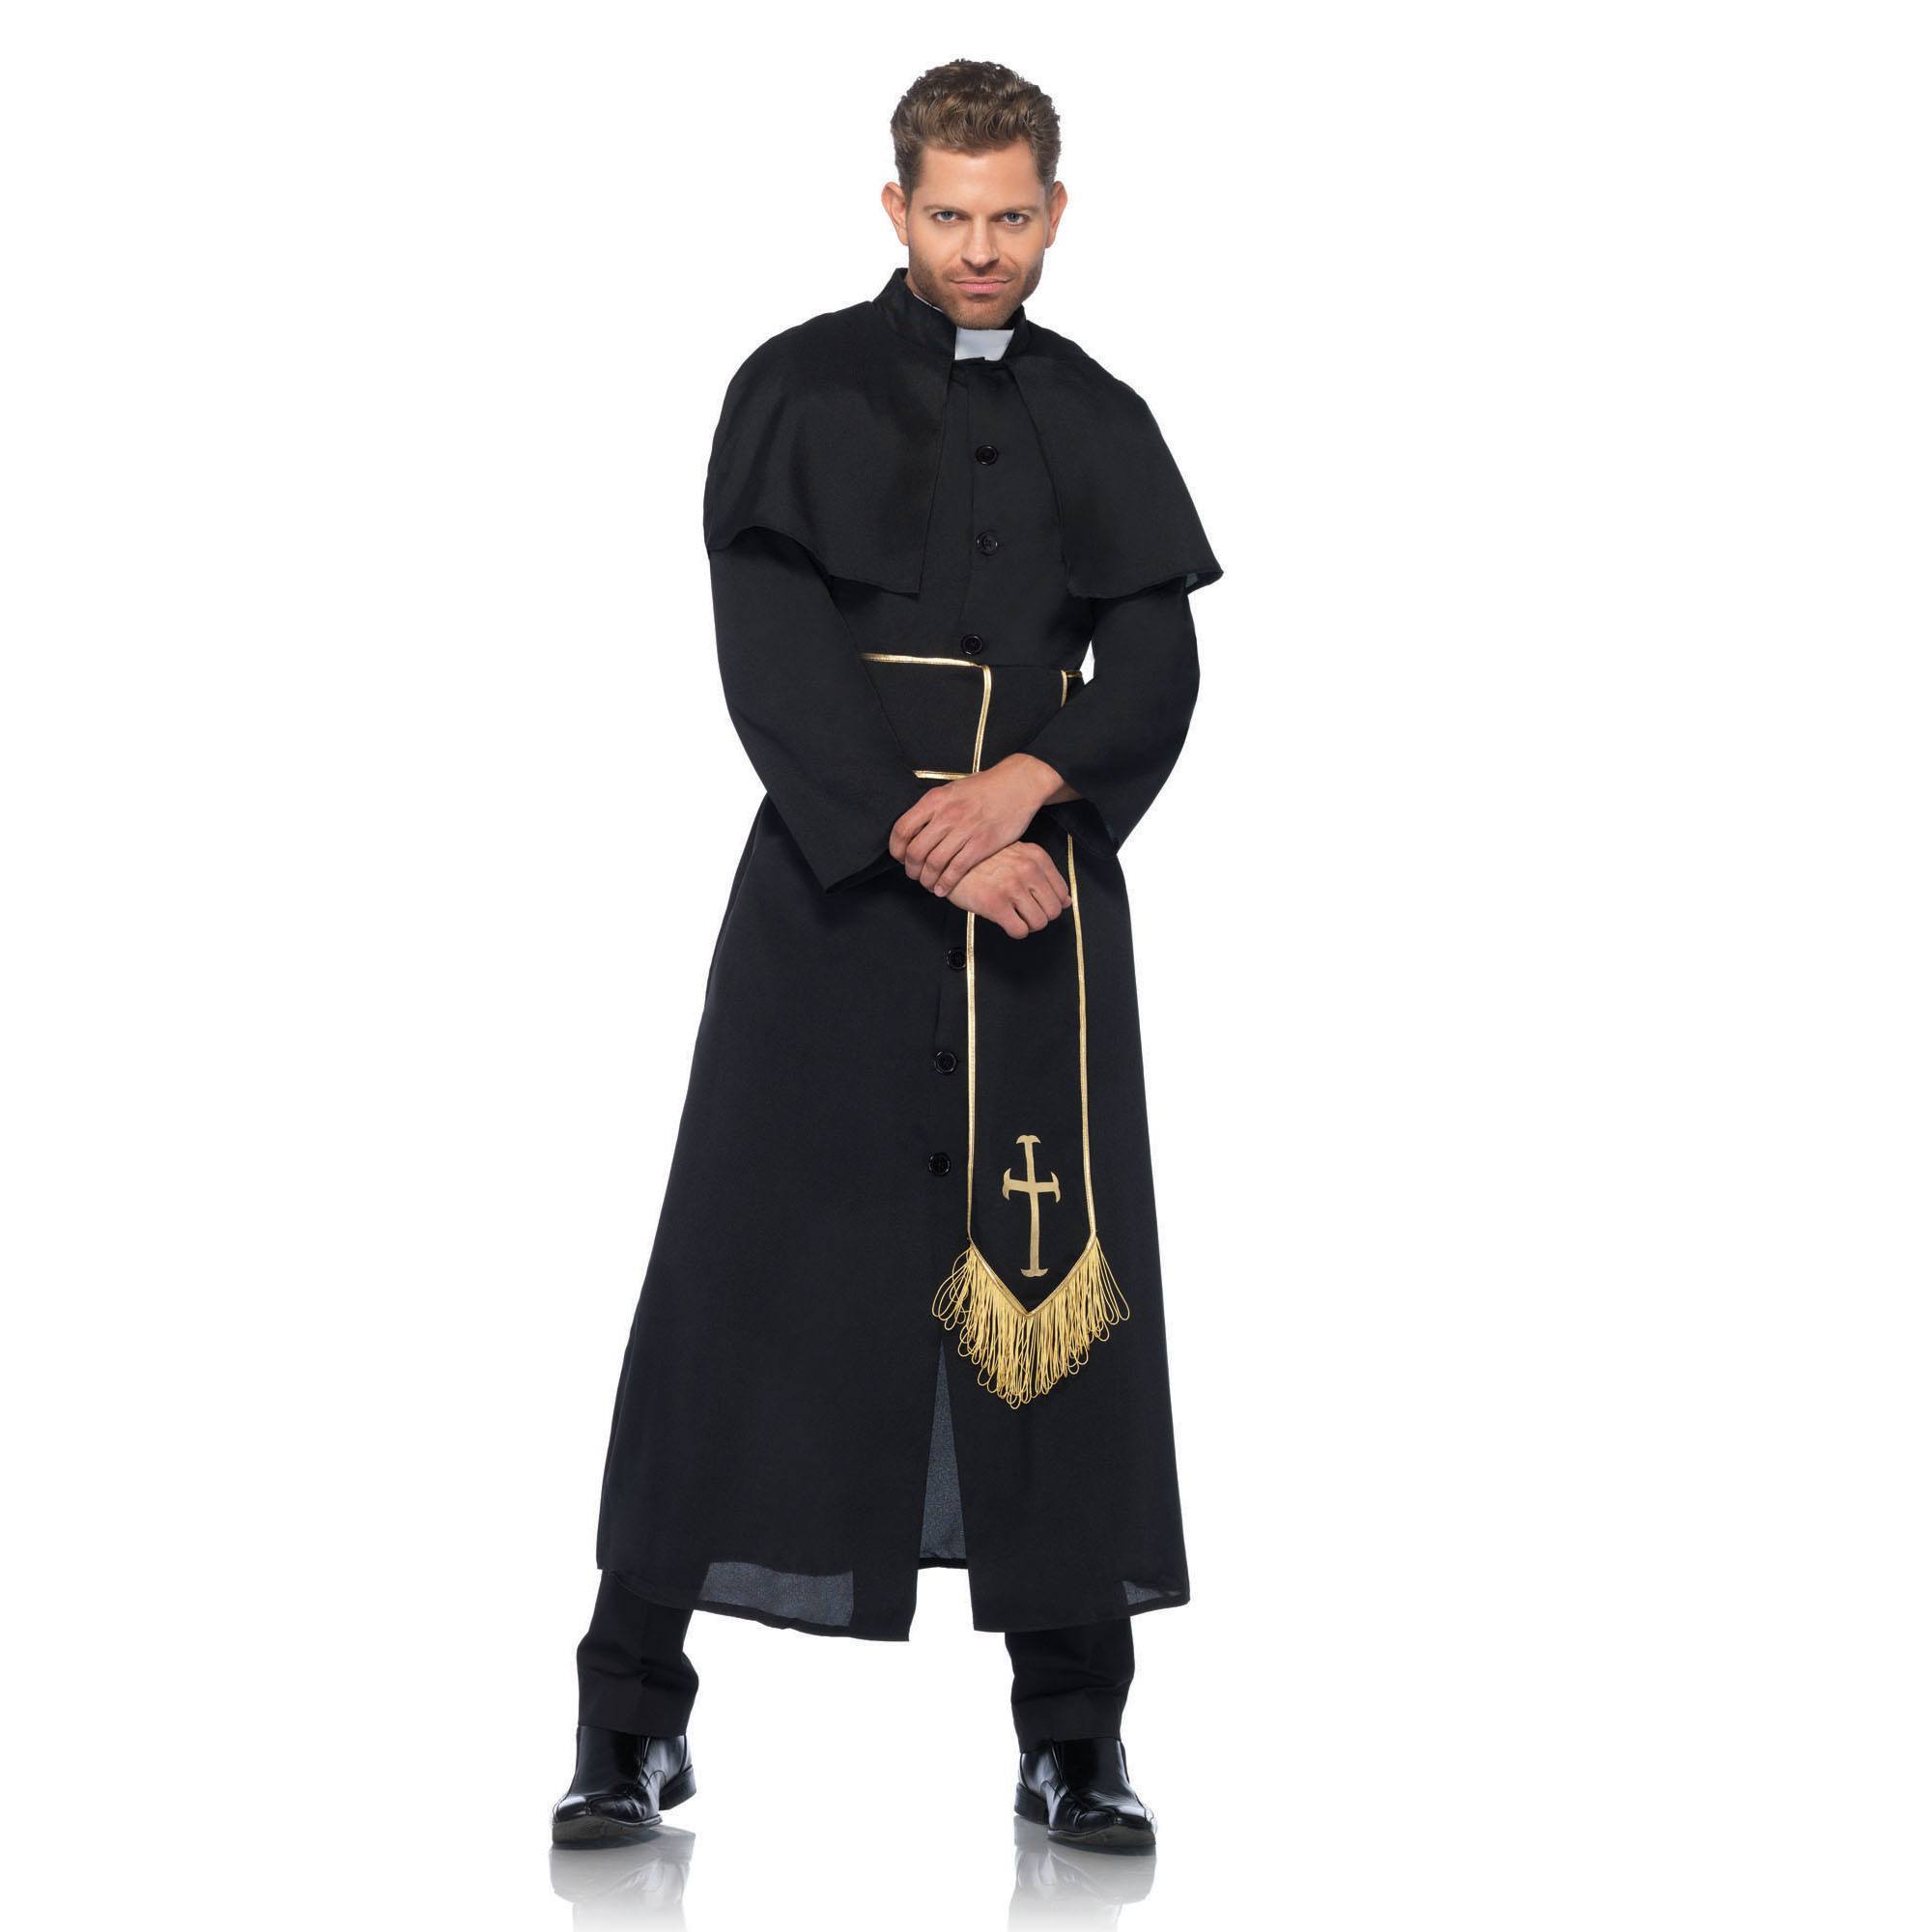 Священники и их одежда